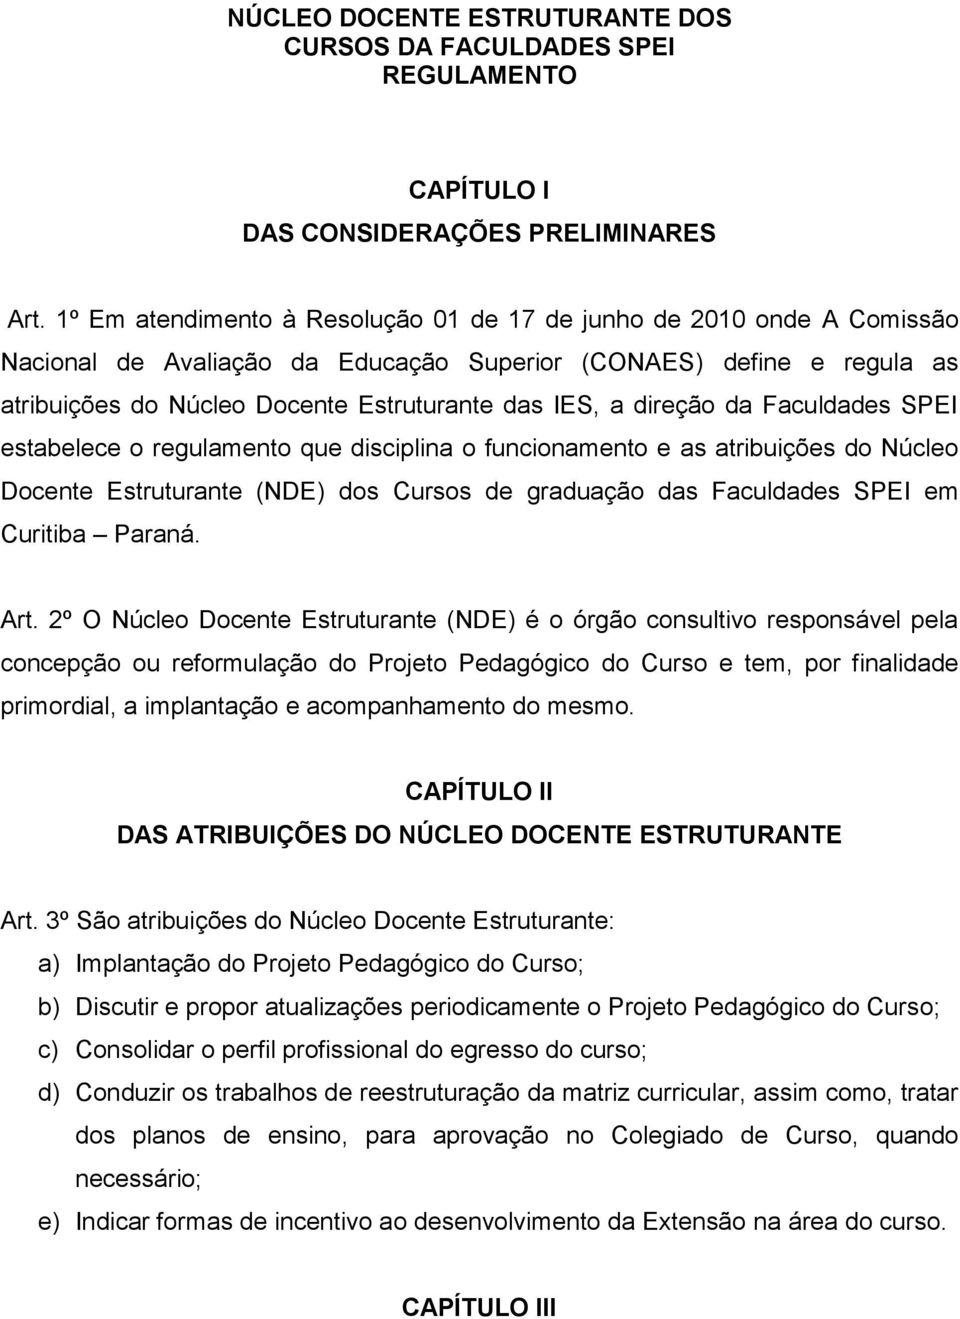 direção da Faculdades SPEI estabelece o regulamento que disciplina o funcionamento e as atribuições do Núcleo Docente Estruturante (NDE) dos Cursos de graduação das Faculdades SPEI em Curitiba Paraná.